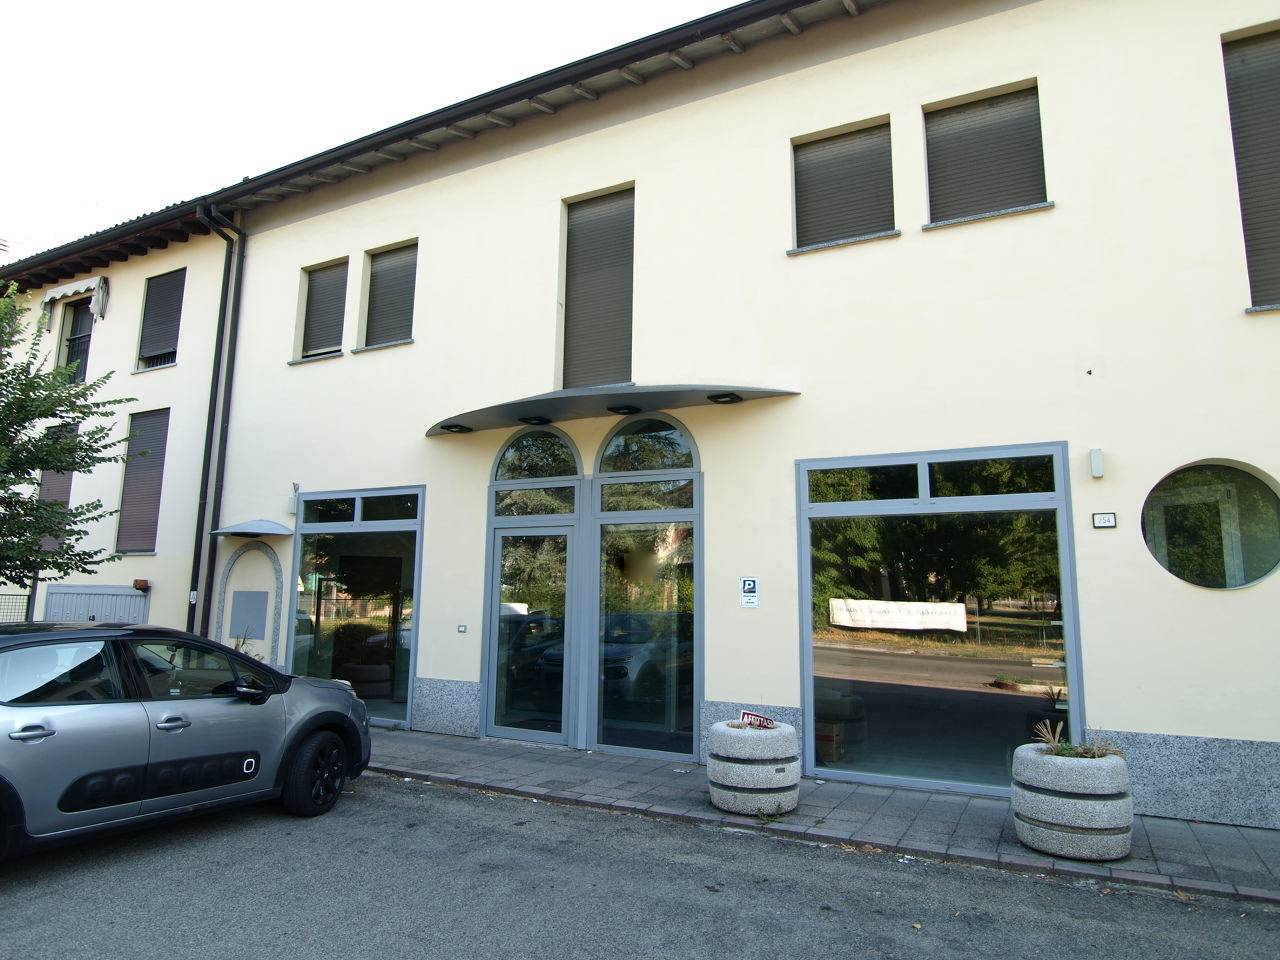 Negozio / Locale in affitto a Savignano sul Panaro, 3 locali, zona Zona: Formiche, prezzo € 1.800 | CambioCasa.it